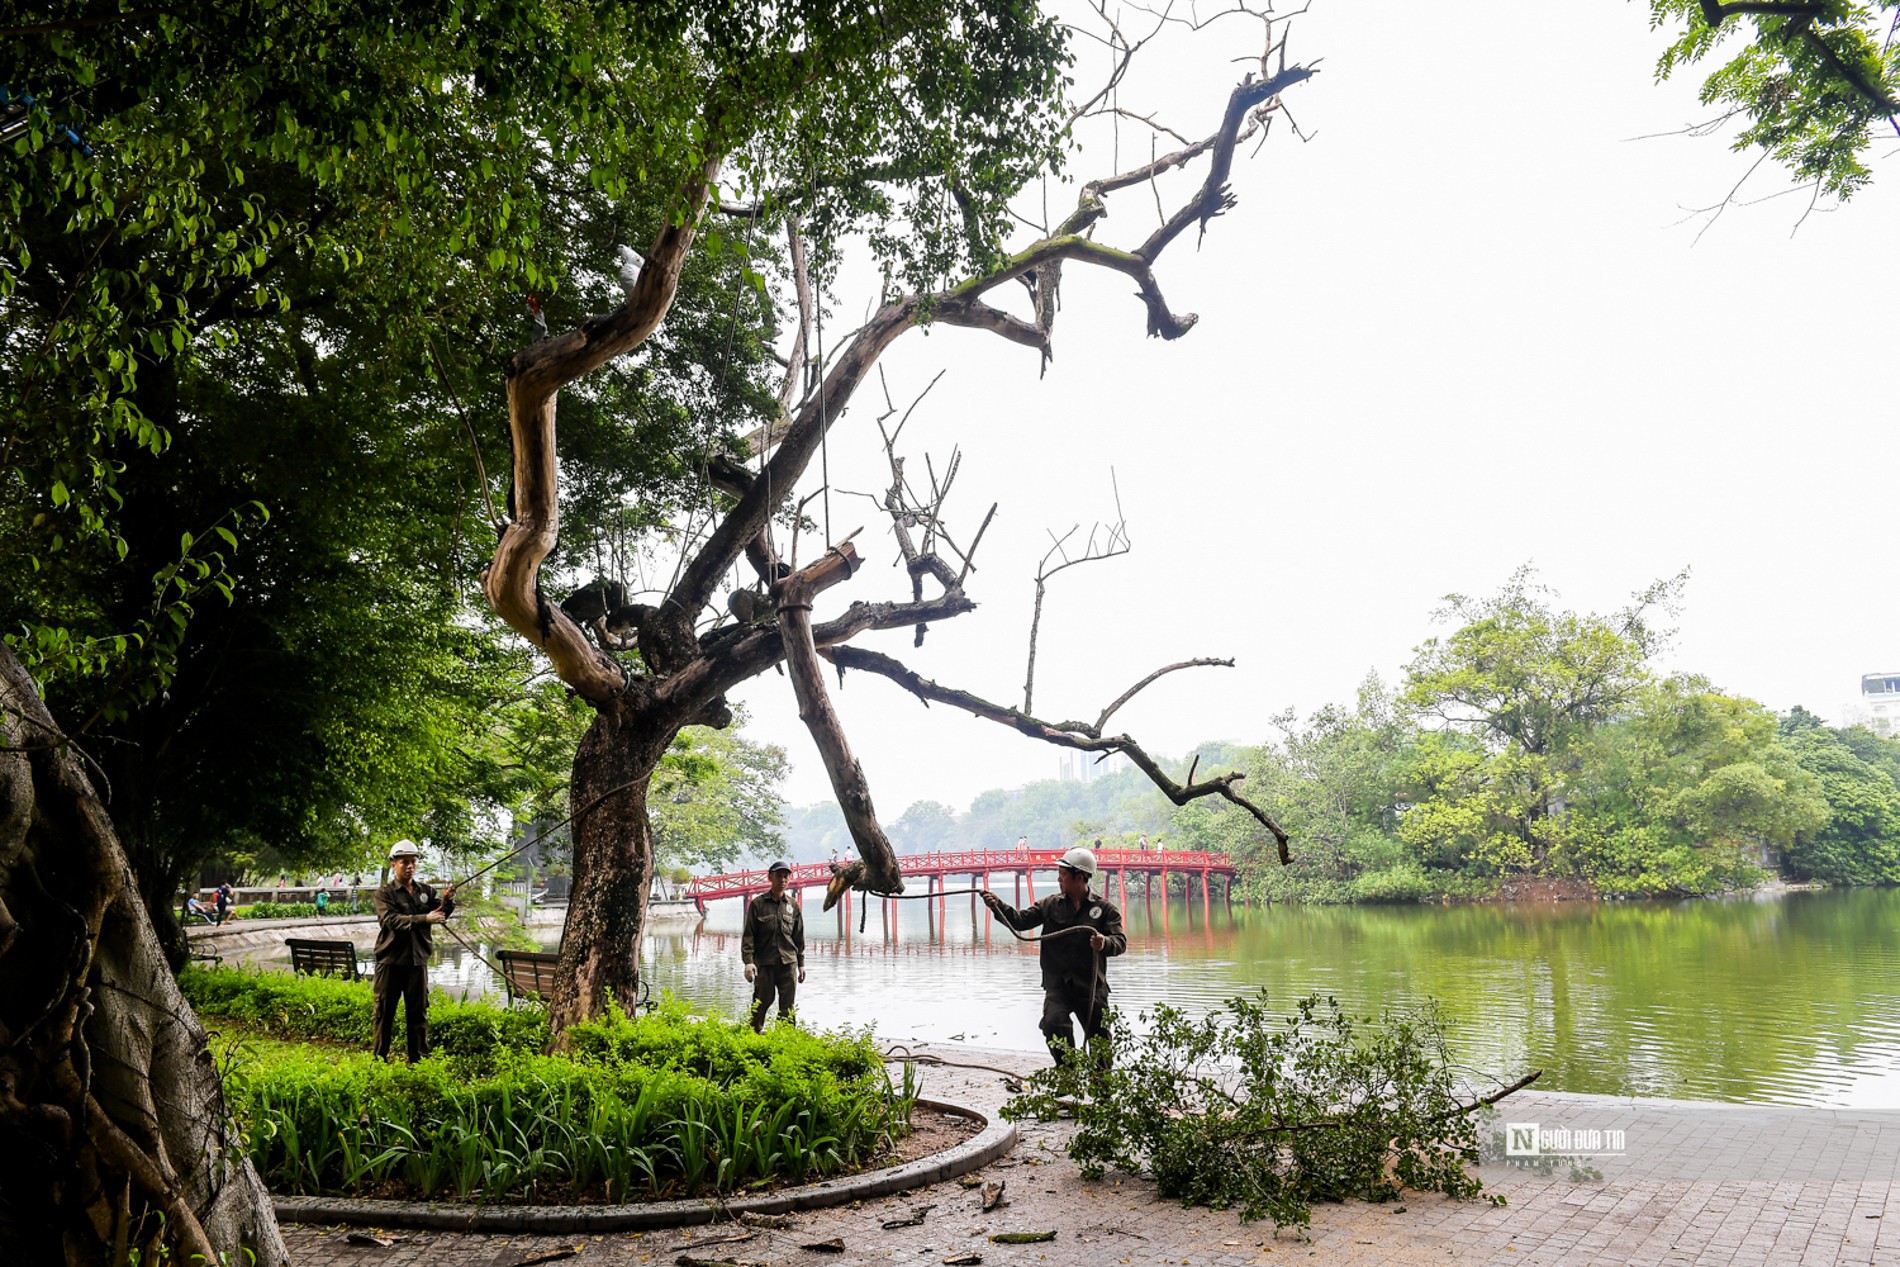 Dân sinh - Hà Nội: Tiến hành chặt 3 cây sưa ven hồ Hoàn Kiếm (Hình 6).